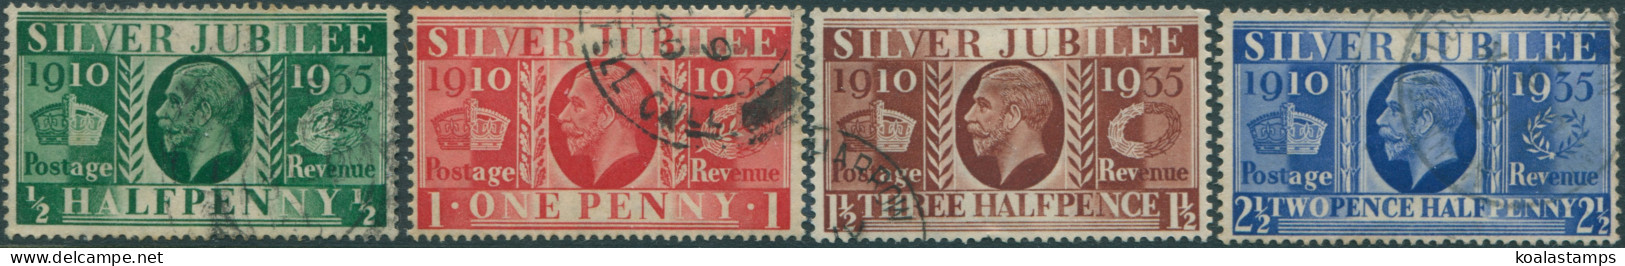 Great Britain 1935 SG453-456 KGV Silver Jubilee Set FU - Unclassified